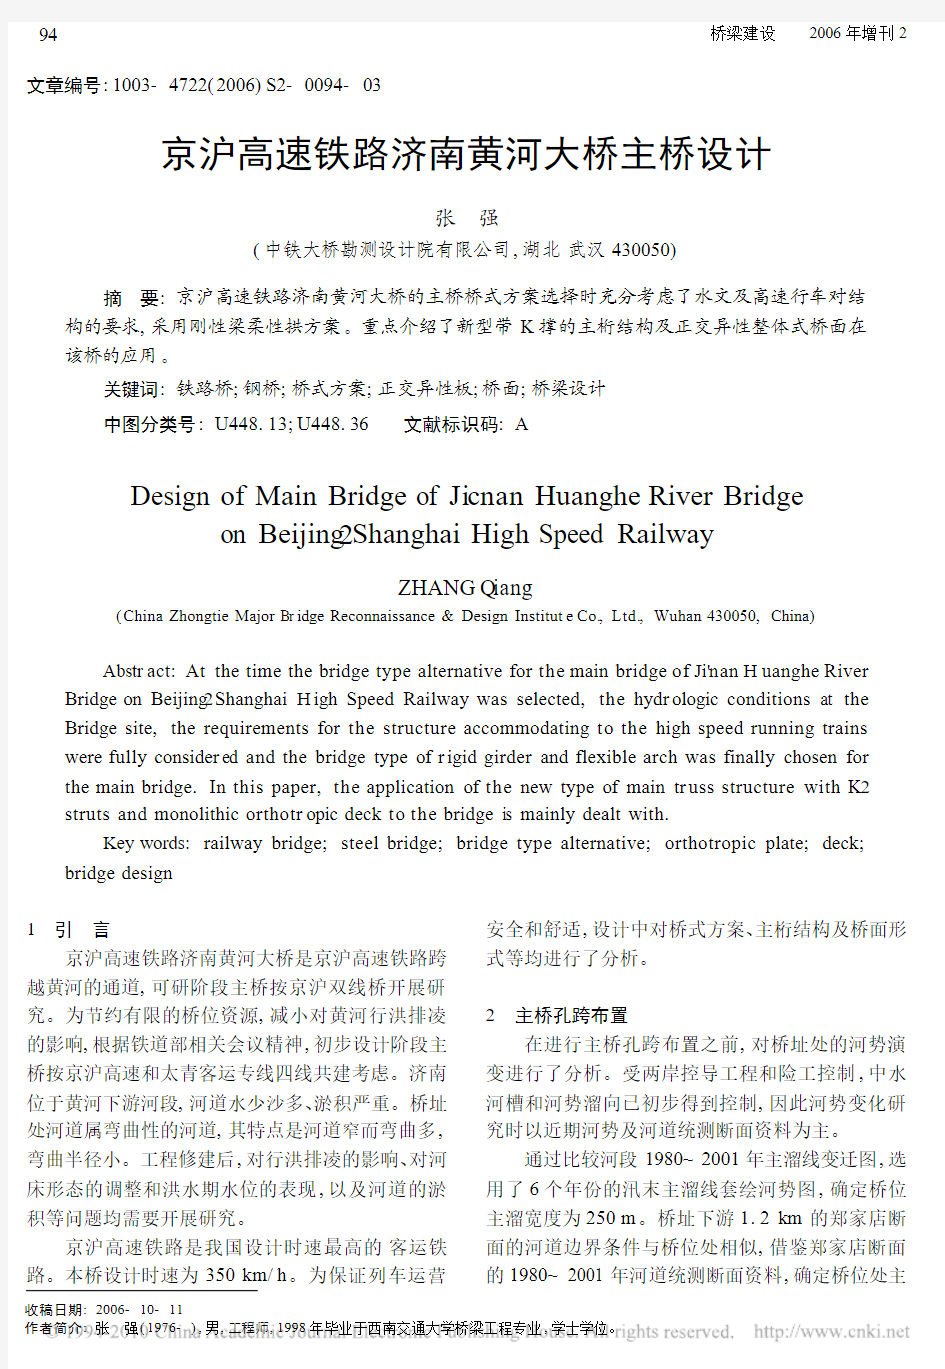 京沪高速铁路济南黄河大桥主桥设计